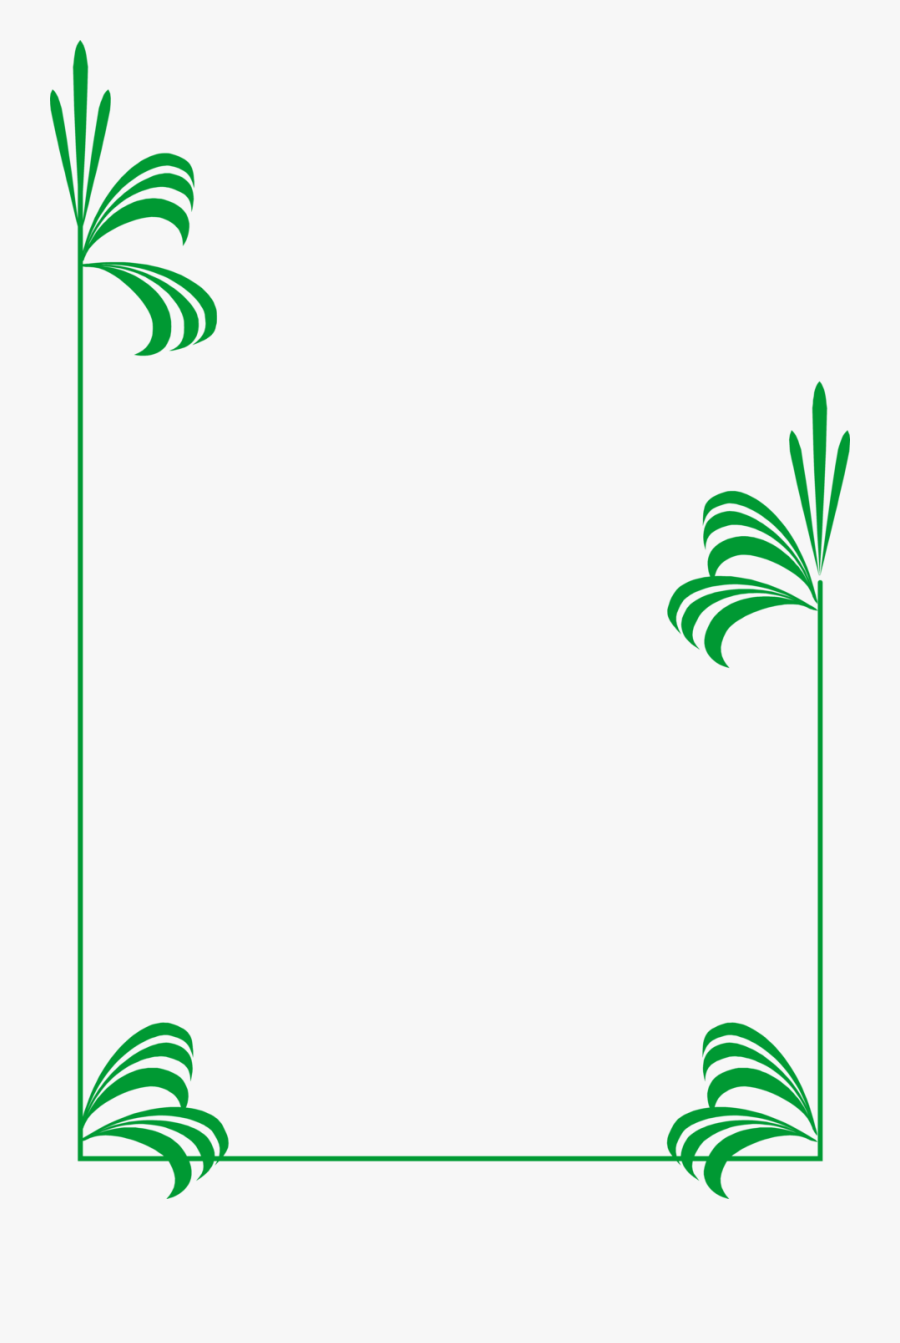 Green Leaf Border Clipart - Frame Green Border Design, Transparent Clipart